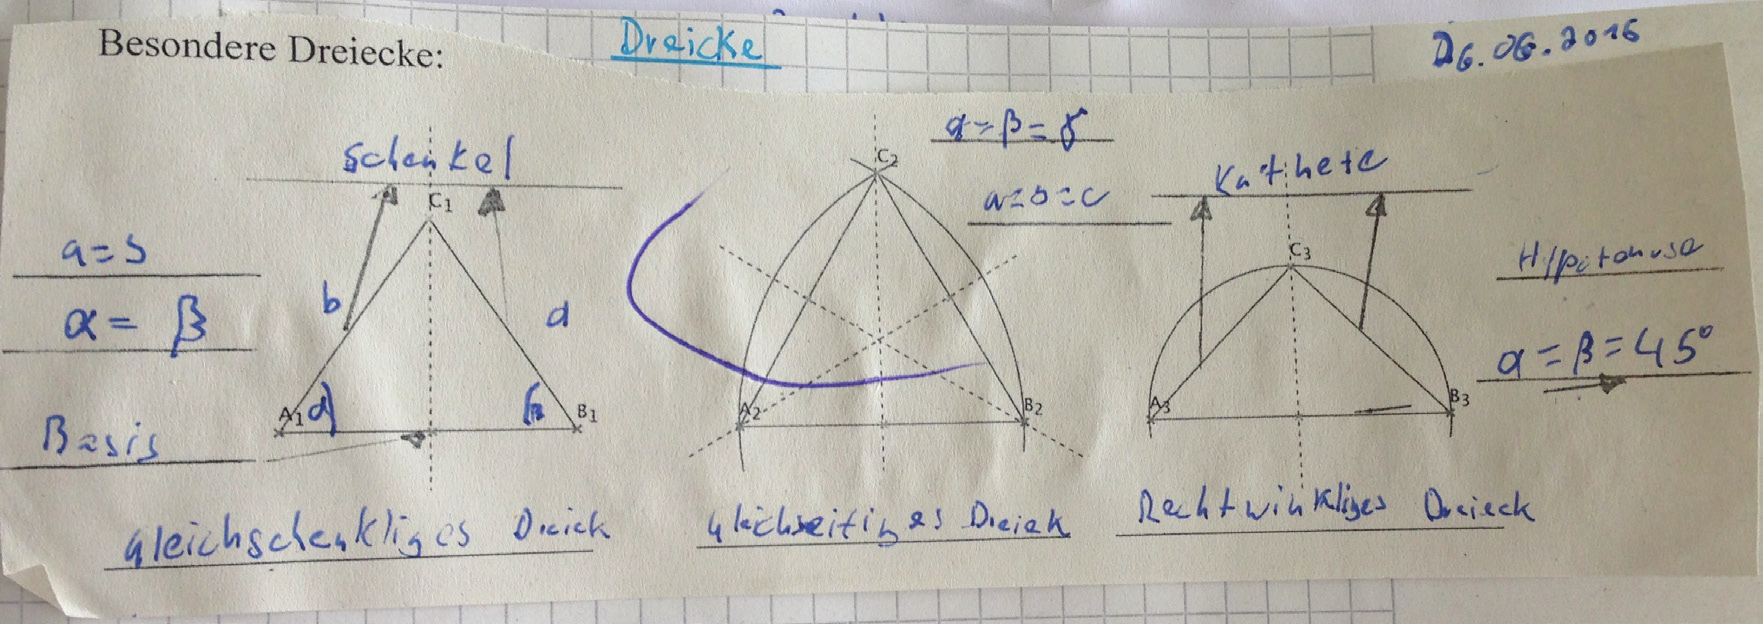 Anschließend projiziert die Lehrkraft folgende Folie mit besonderen Dreiecken an die Wand: Auf diese Weise werden drei besondere Dreiecke gezeigt und deren Besonderheiten im Plenum besprochen.